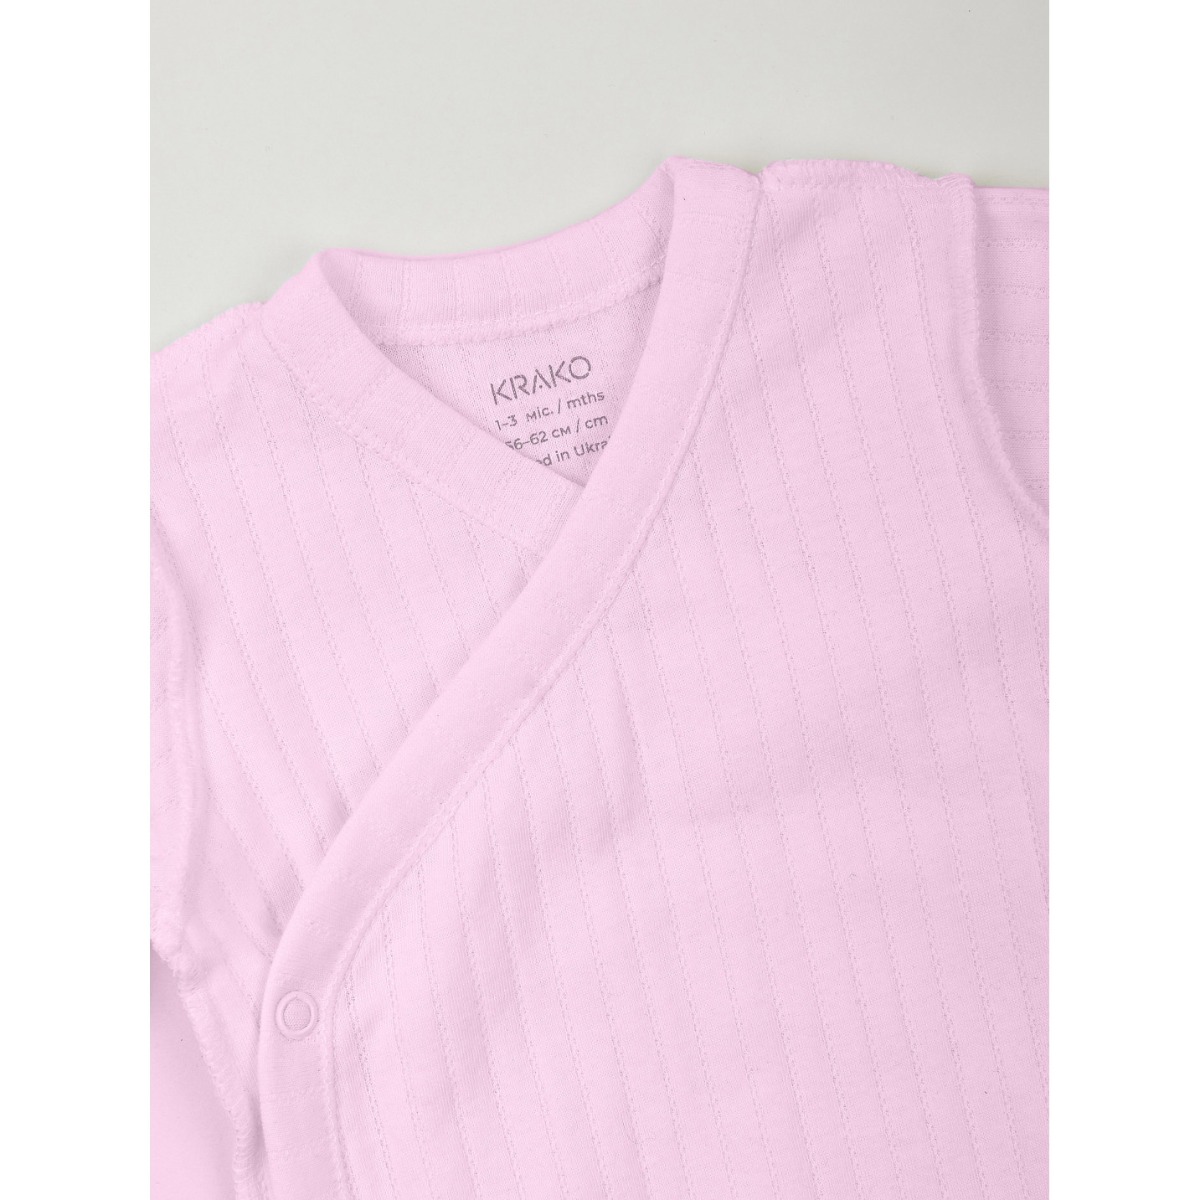 Боді-льоля з ажурного трикотажу для дівчинки (рожевий), 4032B22